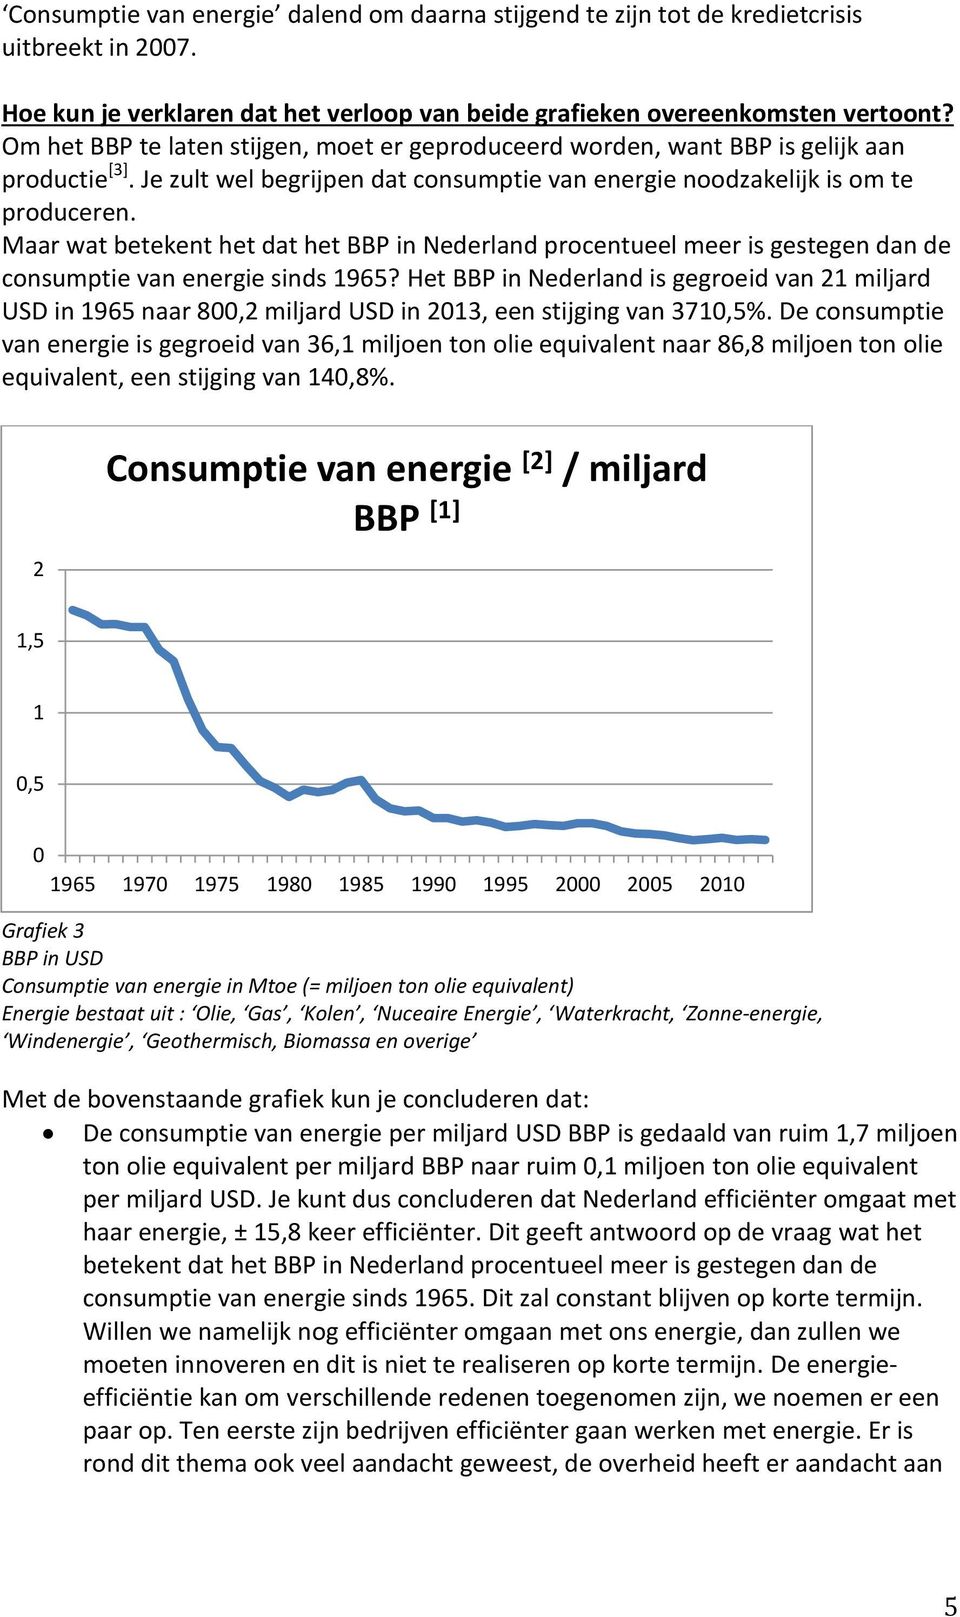 Maar wat betekent het dat het BBP in Nederland procentueel meer is gestegen dan de consumptie van energie sinds 1965?